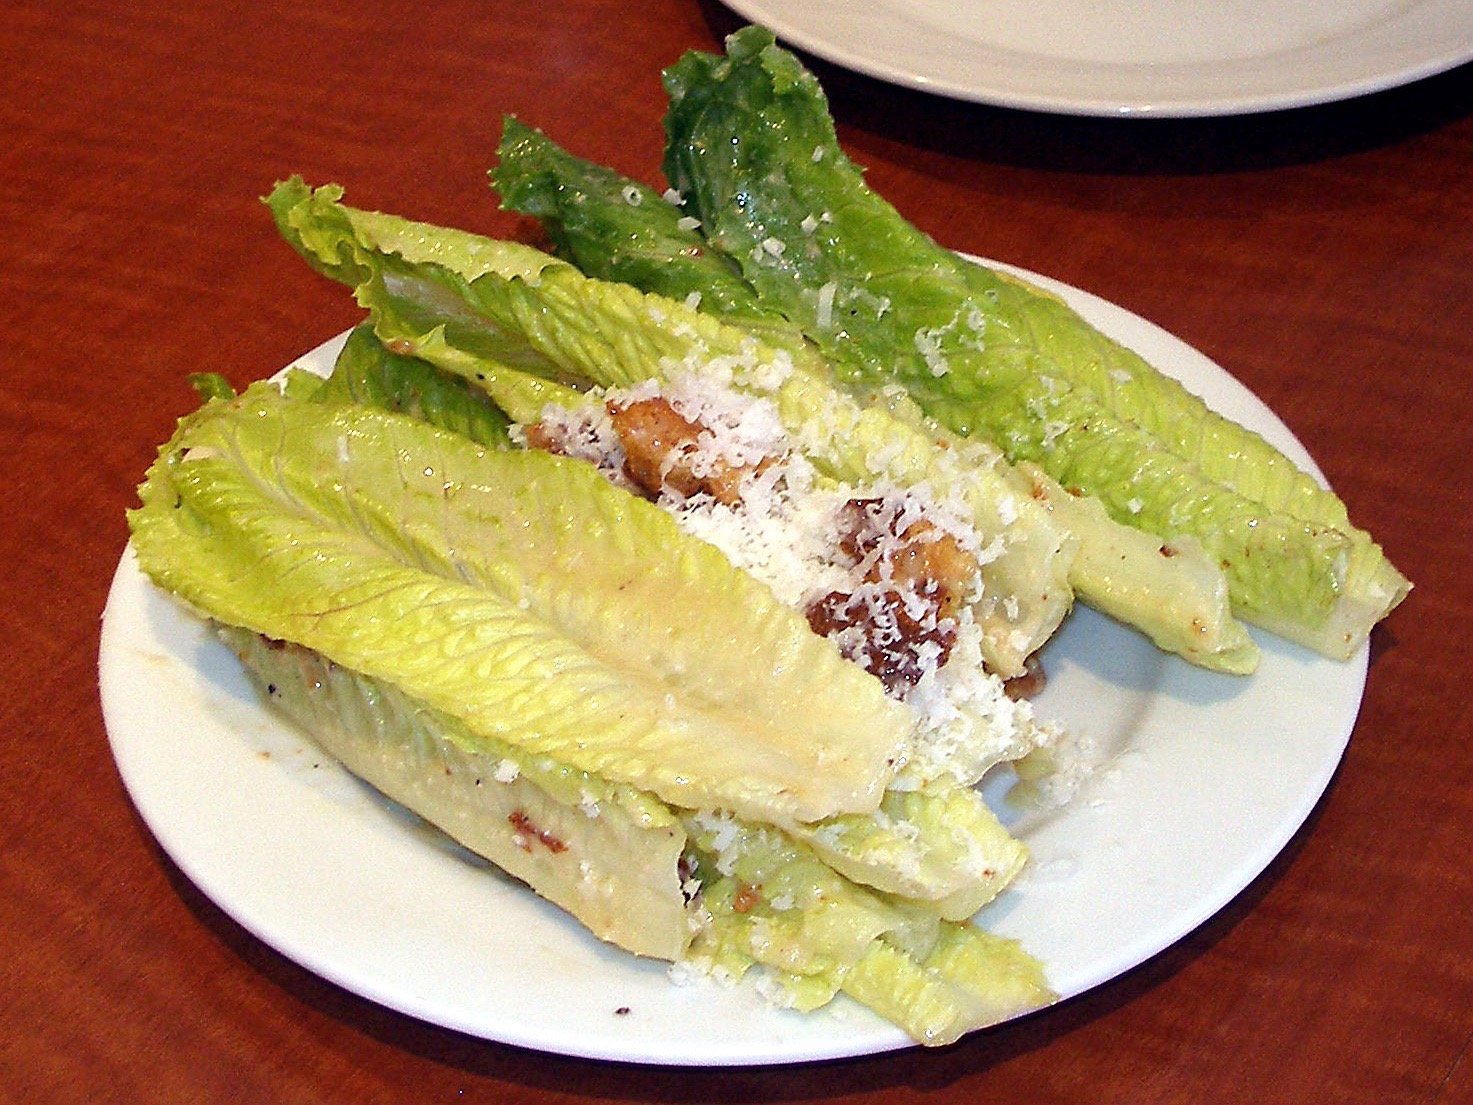 Salad Marin County